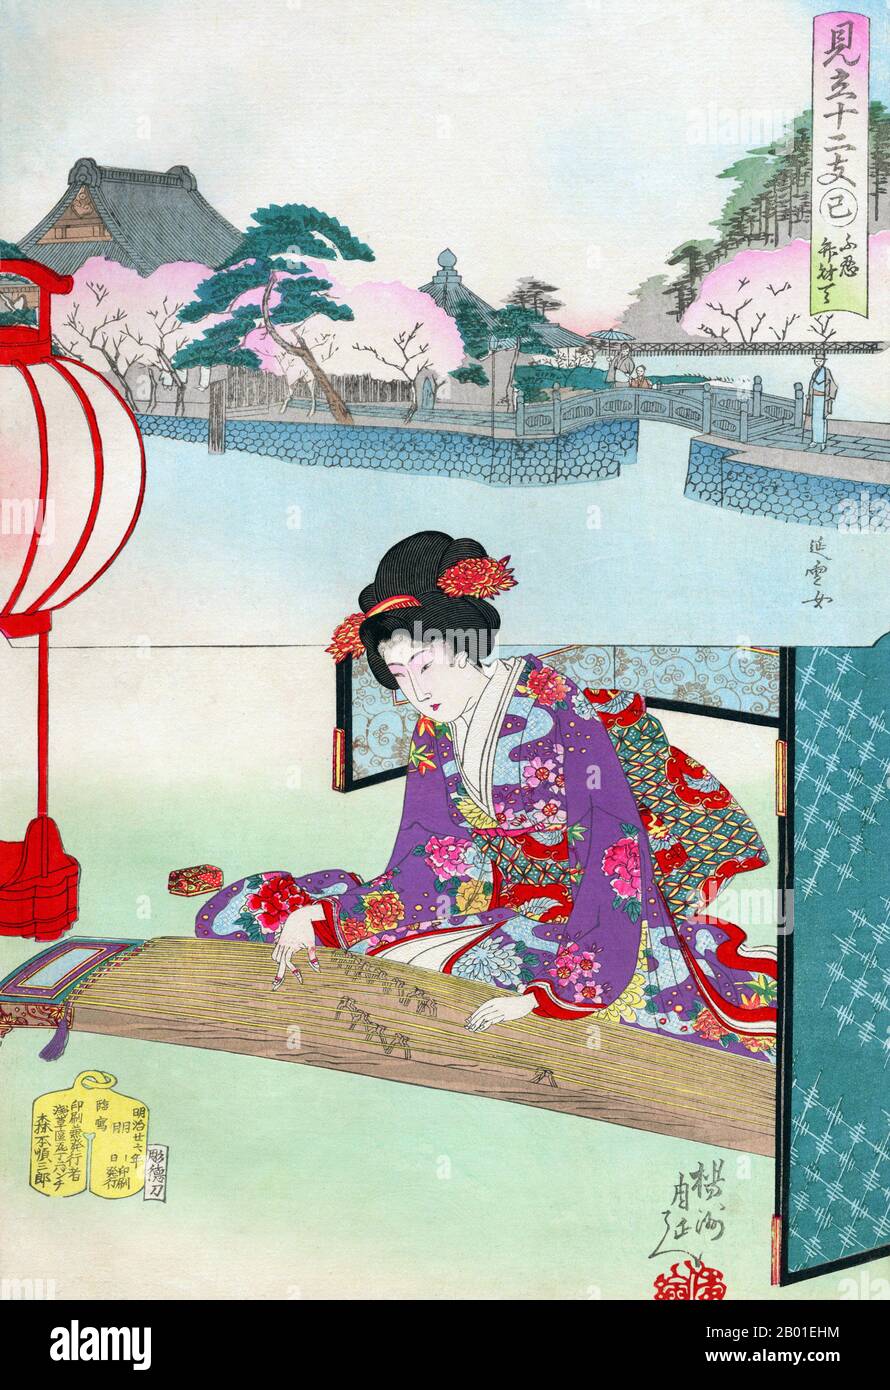 Japan: Eine Frau, die im Shinobazu Pond, Ueno, Koto spielt. Ukiyo-e-Blockdruck von Yoshu Chikanobu (1838-1912), 1894. Eine Frau lehnt sich leicht nach vorne, um Koto zu spielen. Während sie sich im Inneren zu befinden scheint, mit einem faltbaren Bildschirm hinter einer Papierlaterne sitzt, die sanft leuchtet, zeigt der Einsatz blühende Kirschbäume rund um den Shinobazu-Teich in Ueno mit seinem Schrein zur buddhistischen Gottheit Benzaiten. Toyohara Chikanobu, unter seinen Zeitgenossen besser als Yōshū bekannt, war ein produktiver Holzblock-Künstler aus der japanischen Meiji-Zeit. Seine Werke spiegeln den Übergang vom Zeitalter der Samurai zur Meiji-Moderne wider. Stockfoto